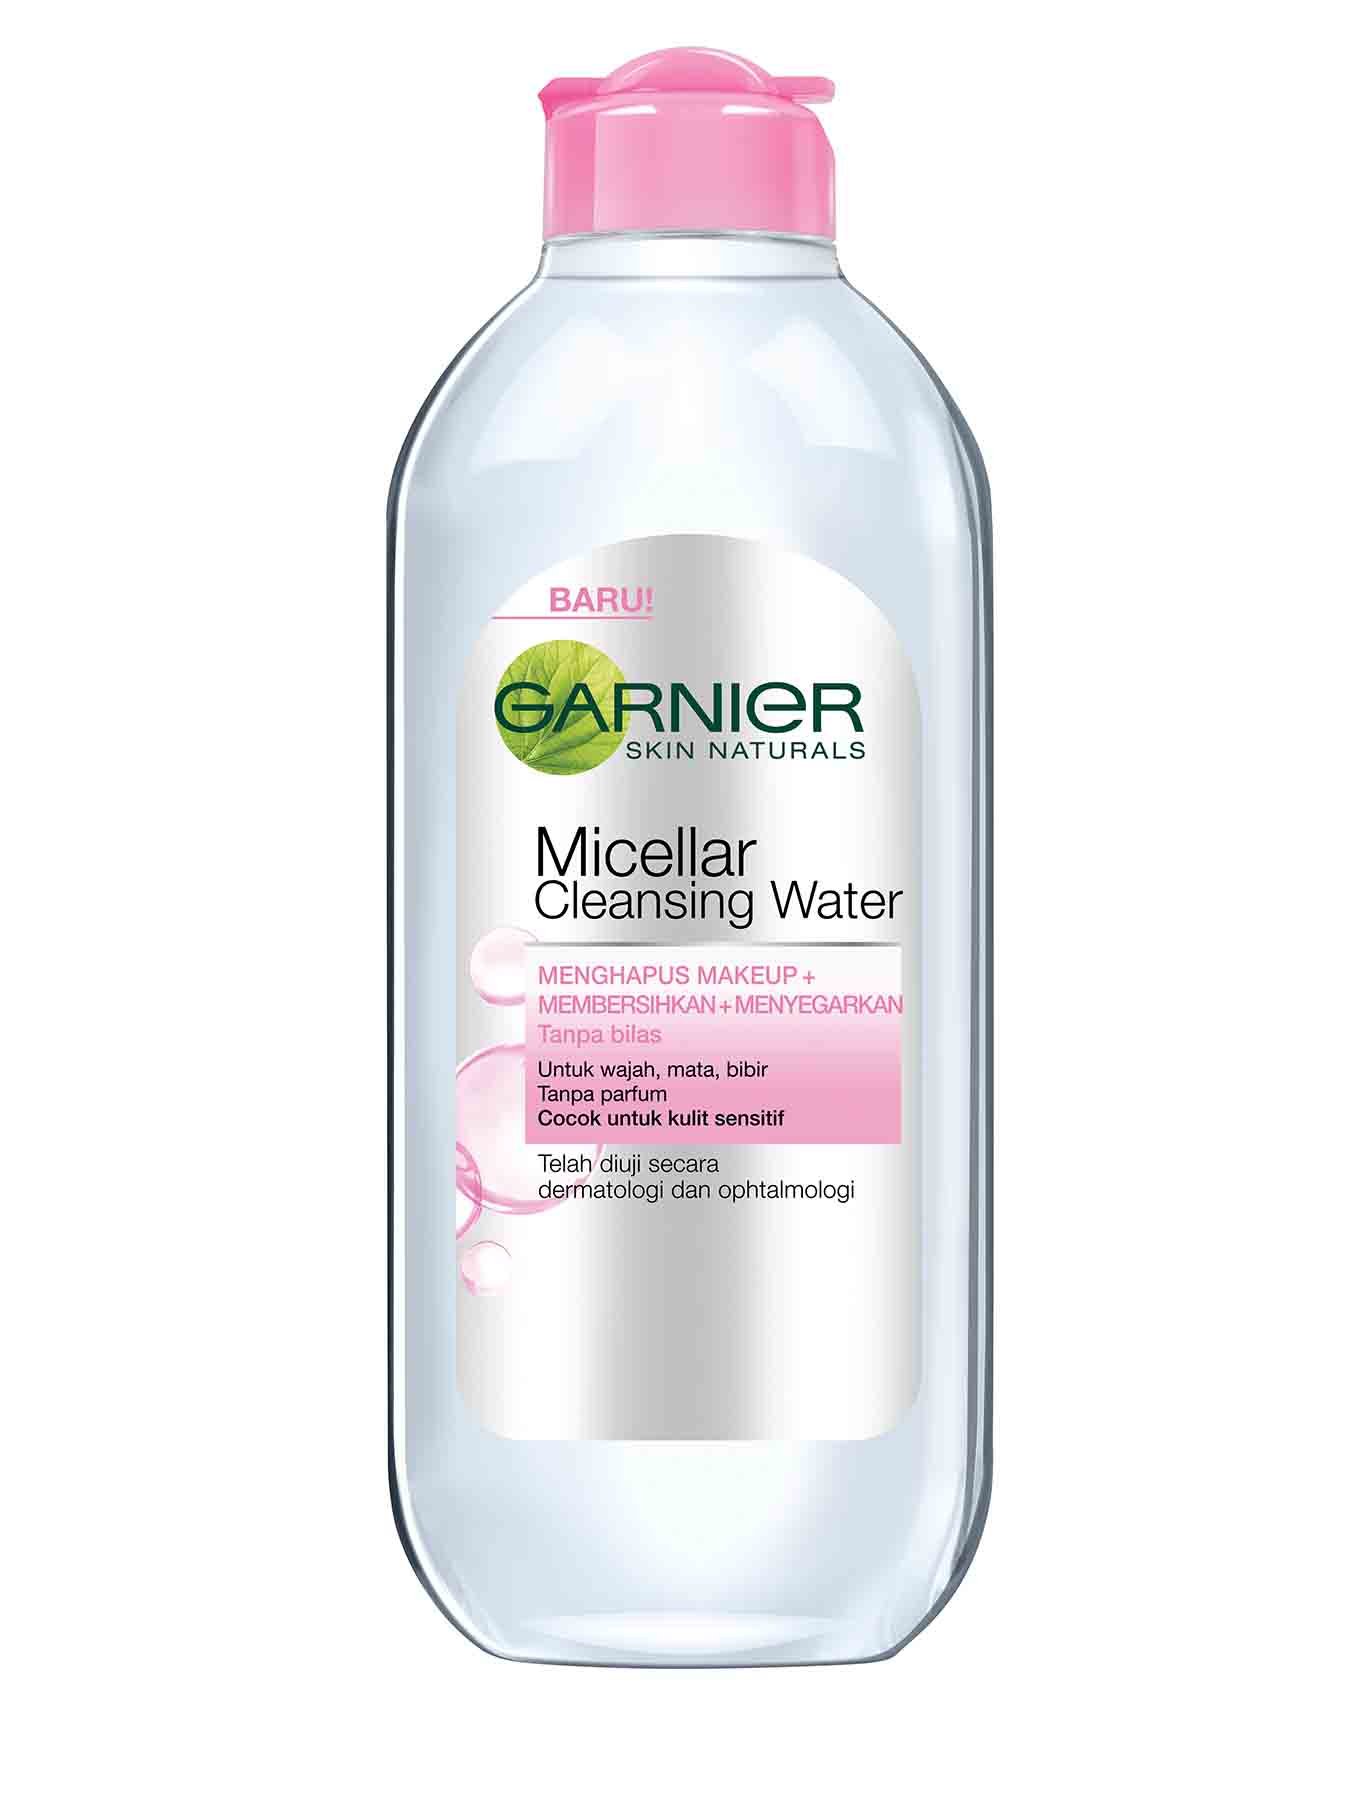 garnier micellar cleansing water pink